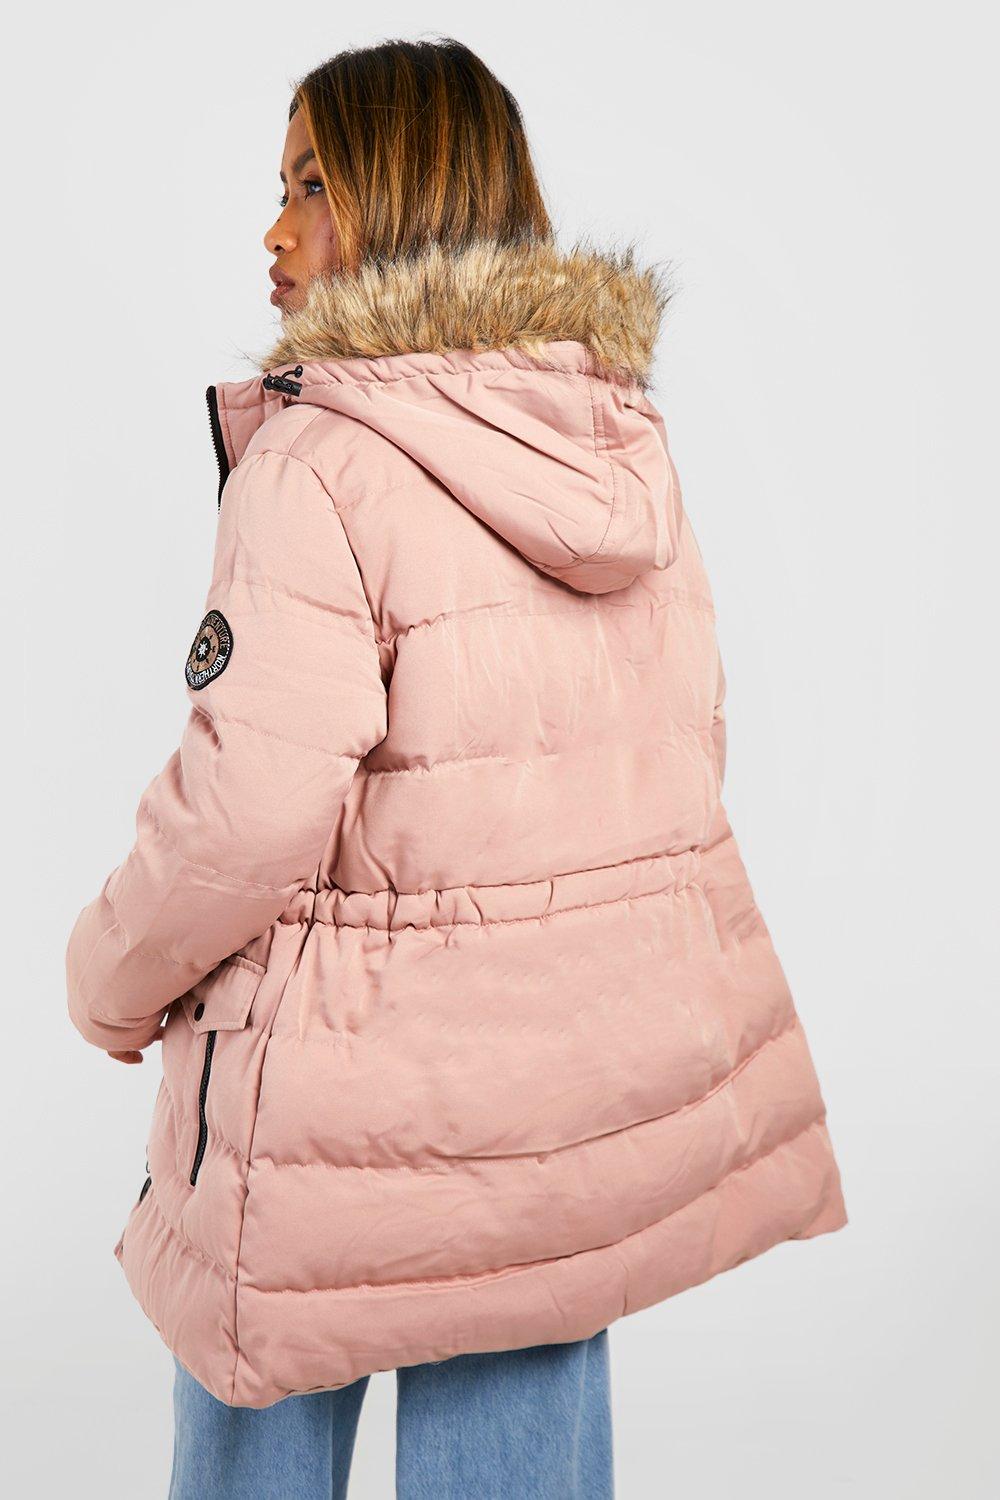 áo khoác nữ-hồng-hồng-hồng-luxe-leo núi-parka (2)